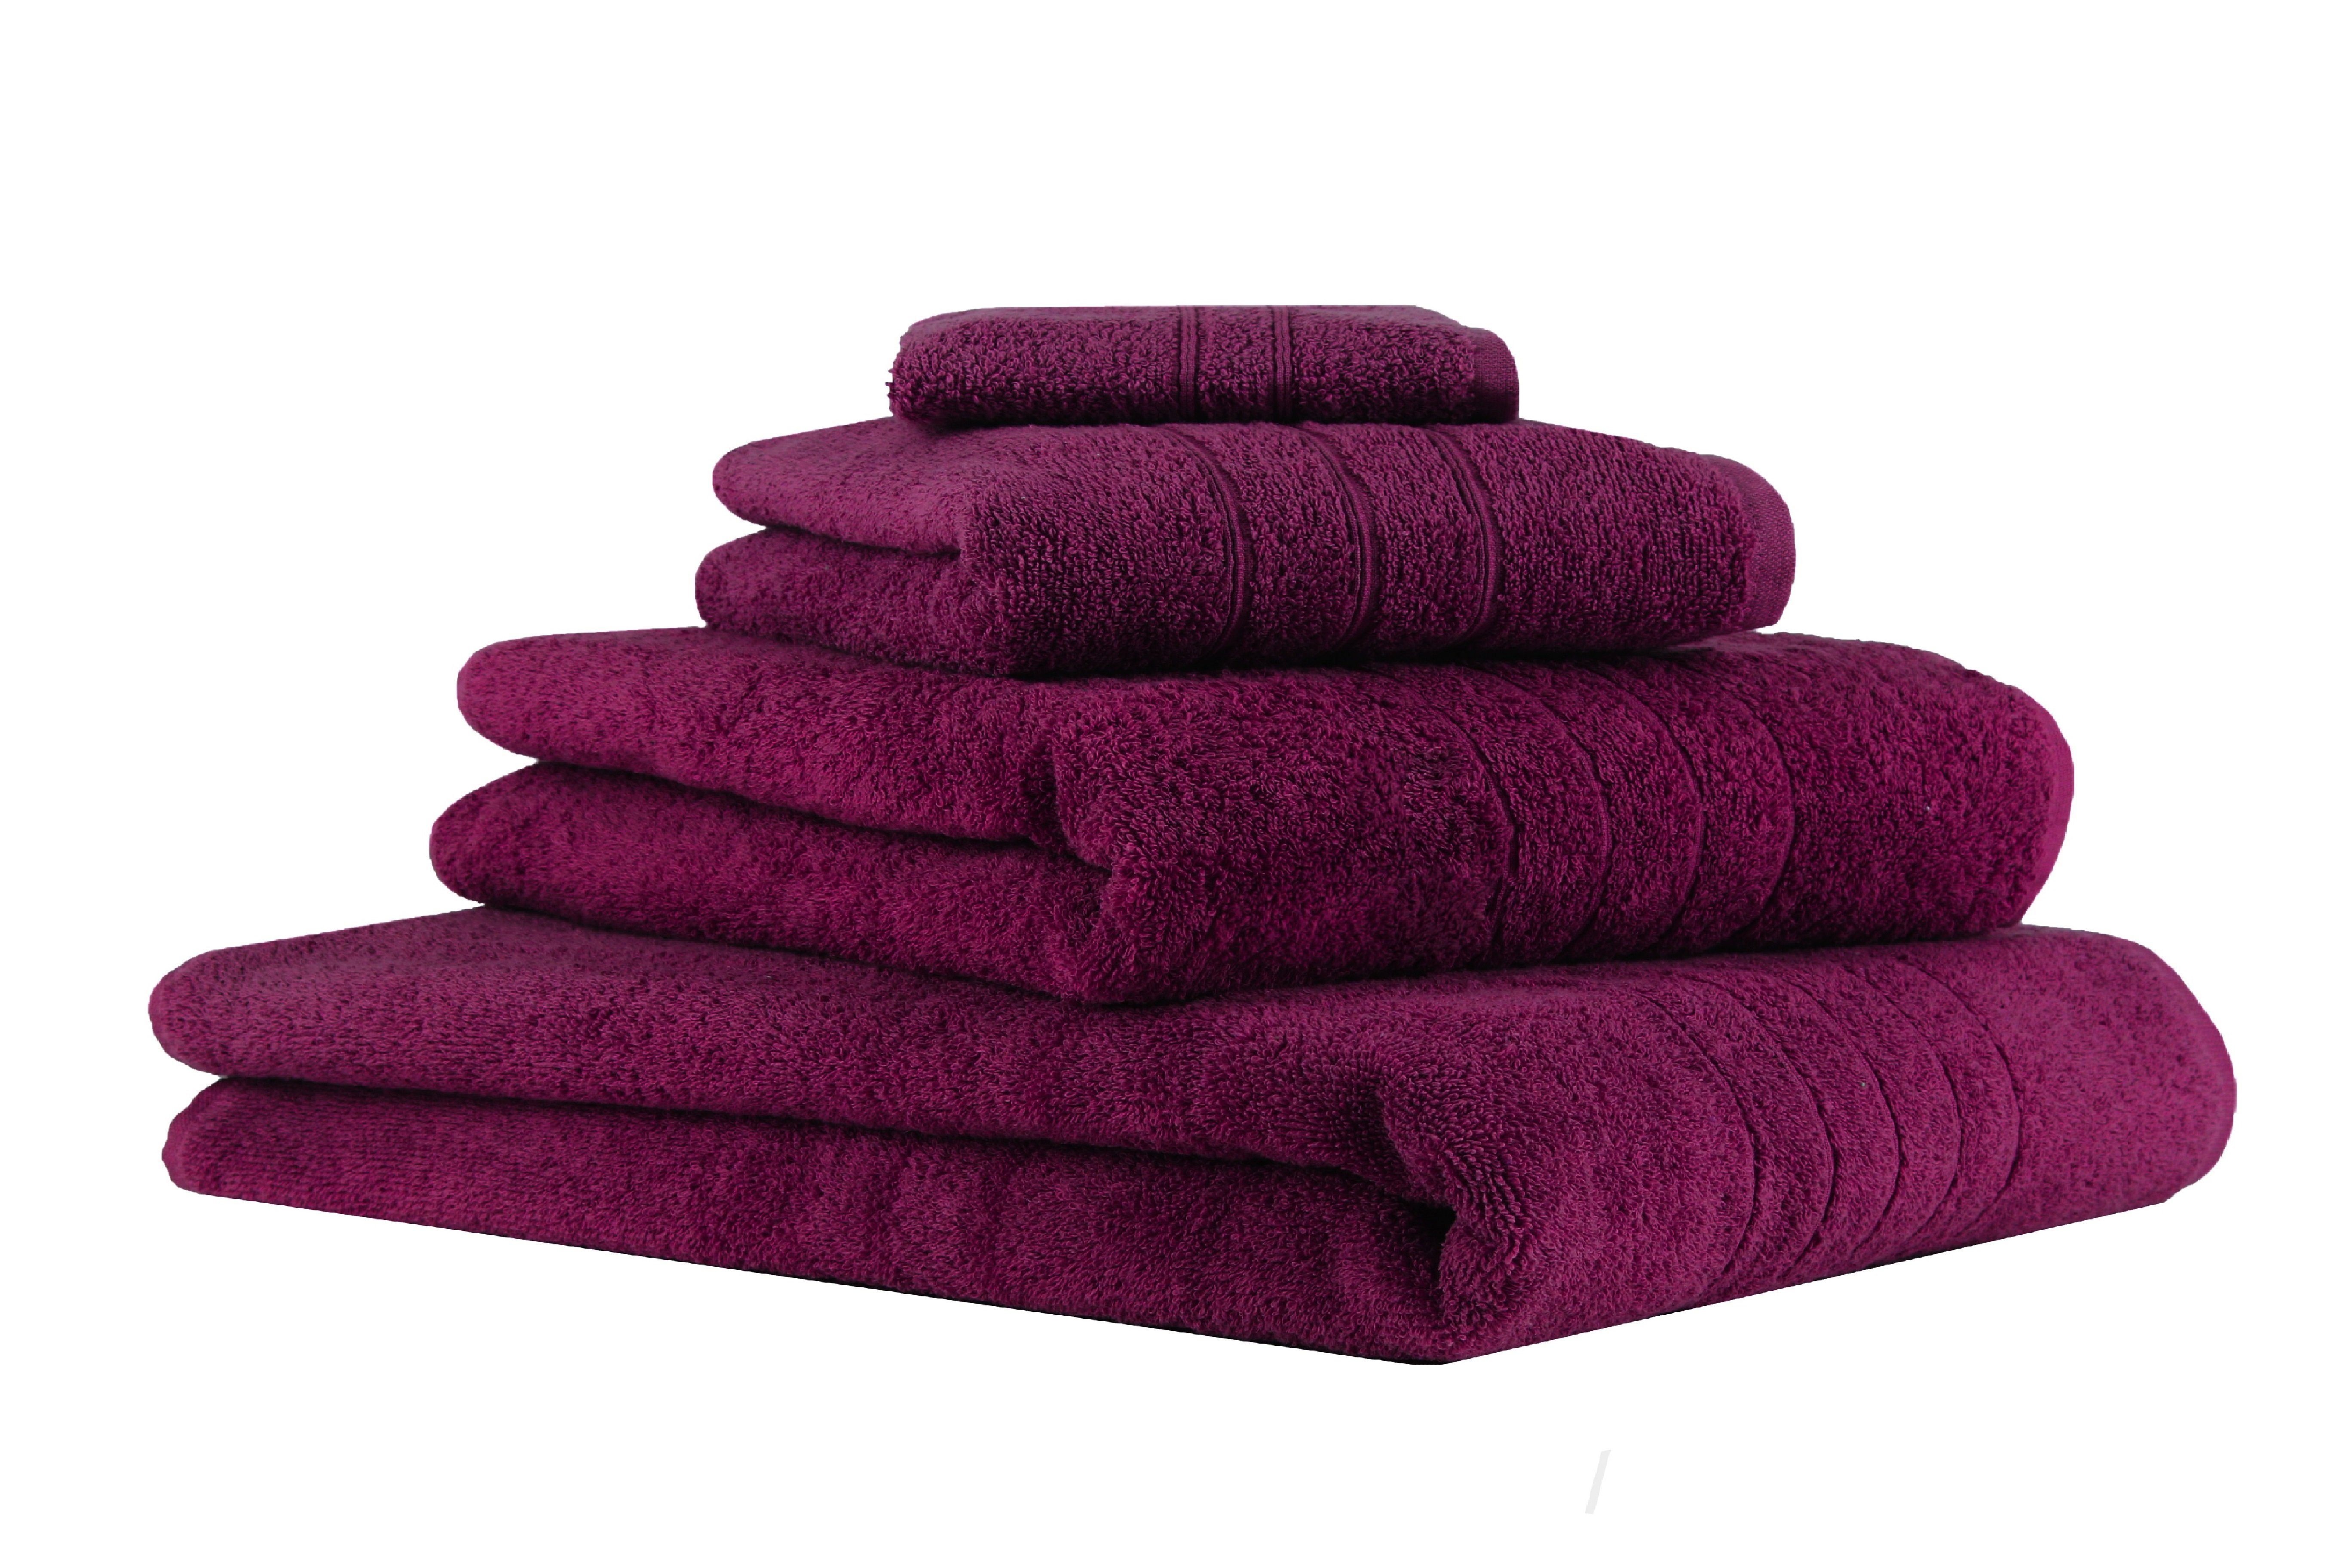 Betz Handtuch Set 4-TLG. Handtuch-Set Deluxe 100% Baumwolle 1 Badetuch 1 Duschtuch 1 Handtuch 1 Seiftuch Farbe Pflaume, 100% Baumwolle, (4-tlg) | Handtuch-Sets